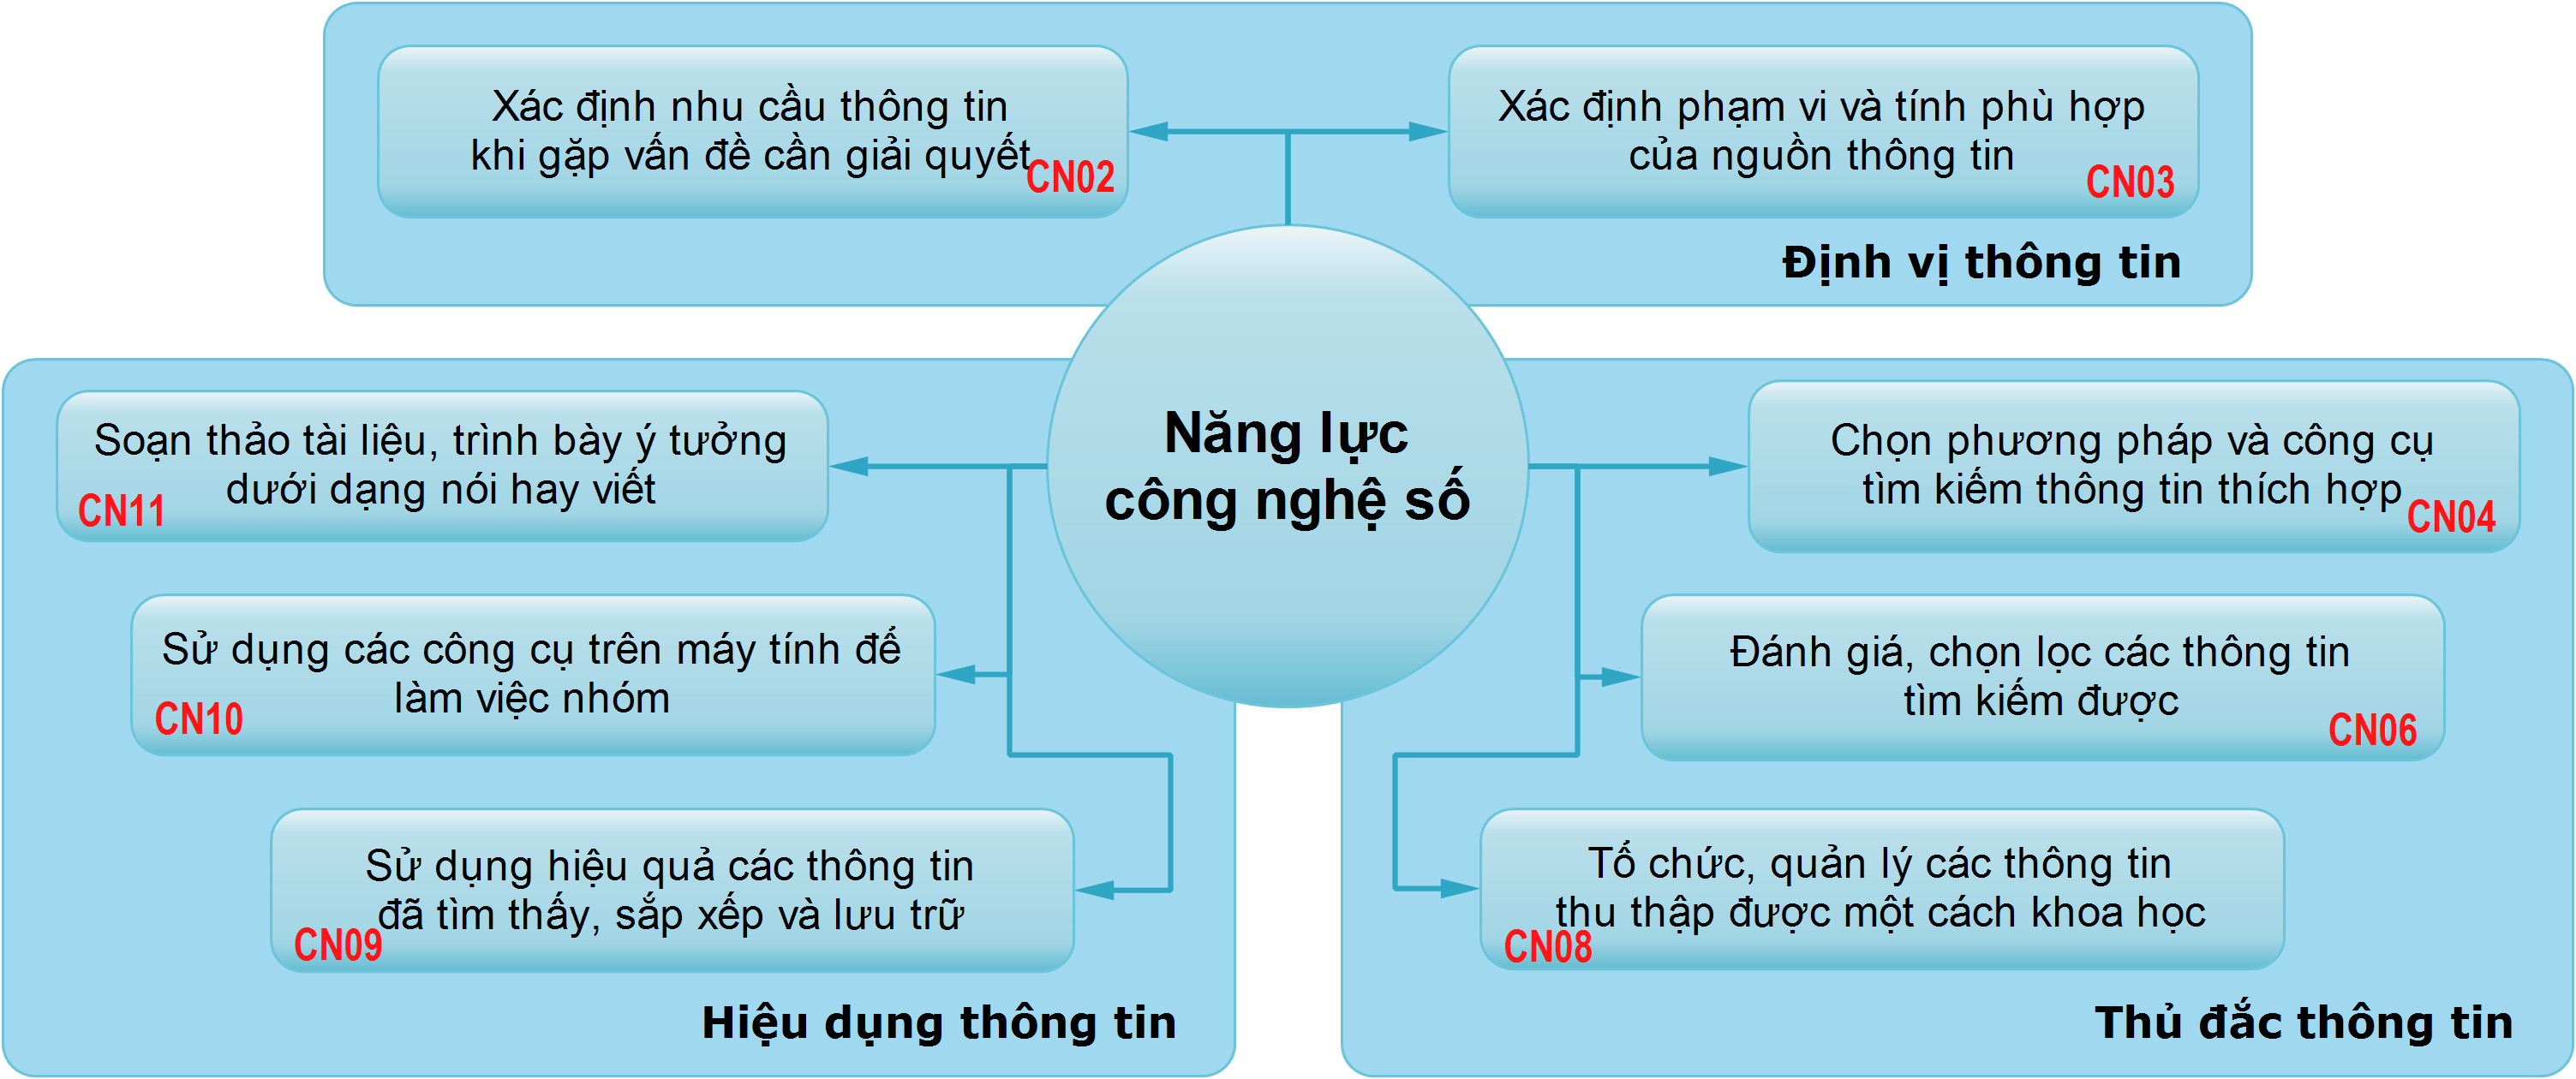 Cấu phần mô hình sơ khởi về năng lực công nghệ số tại Việt Nam